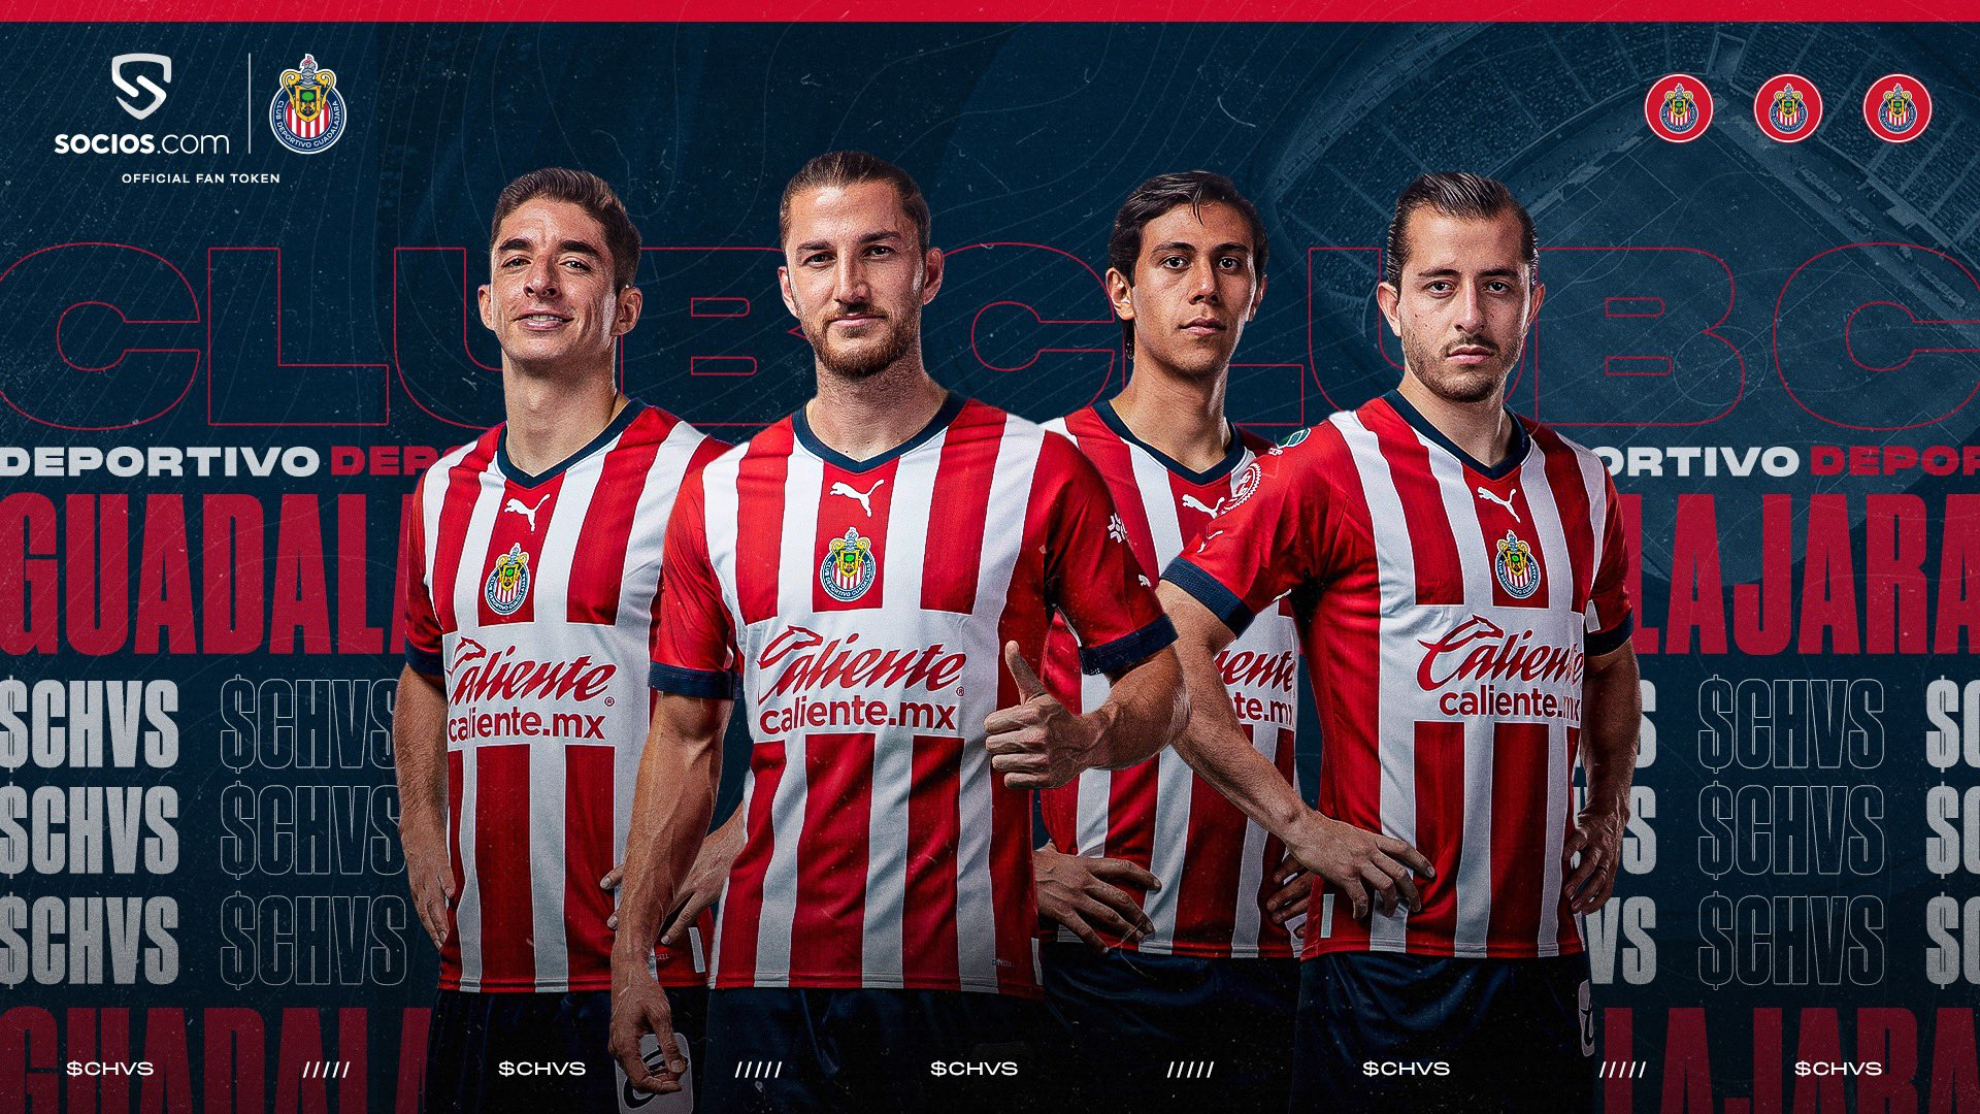 Chivas se une a los grandes clubes y lanza su Fan Token con Socios.com